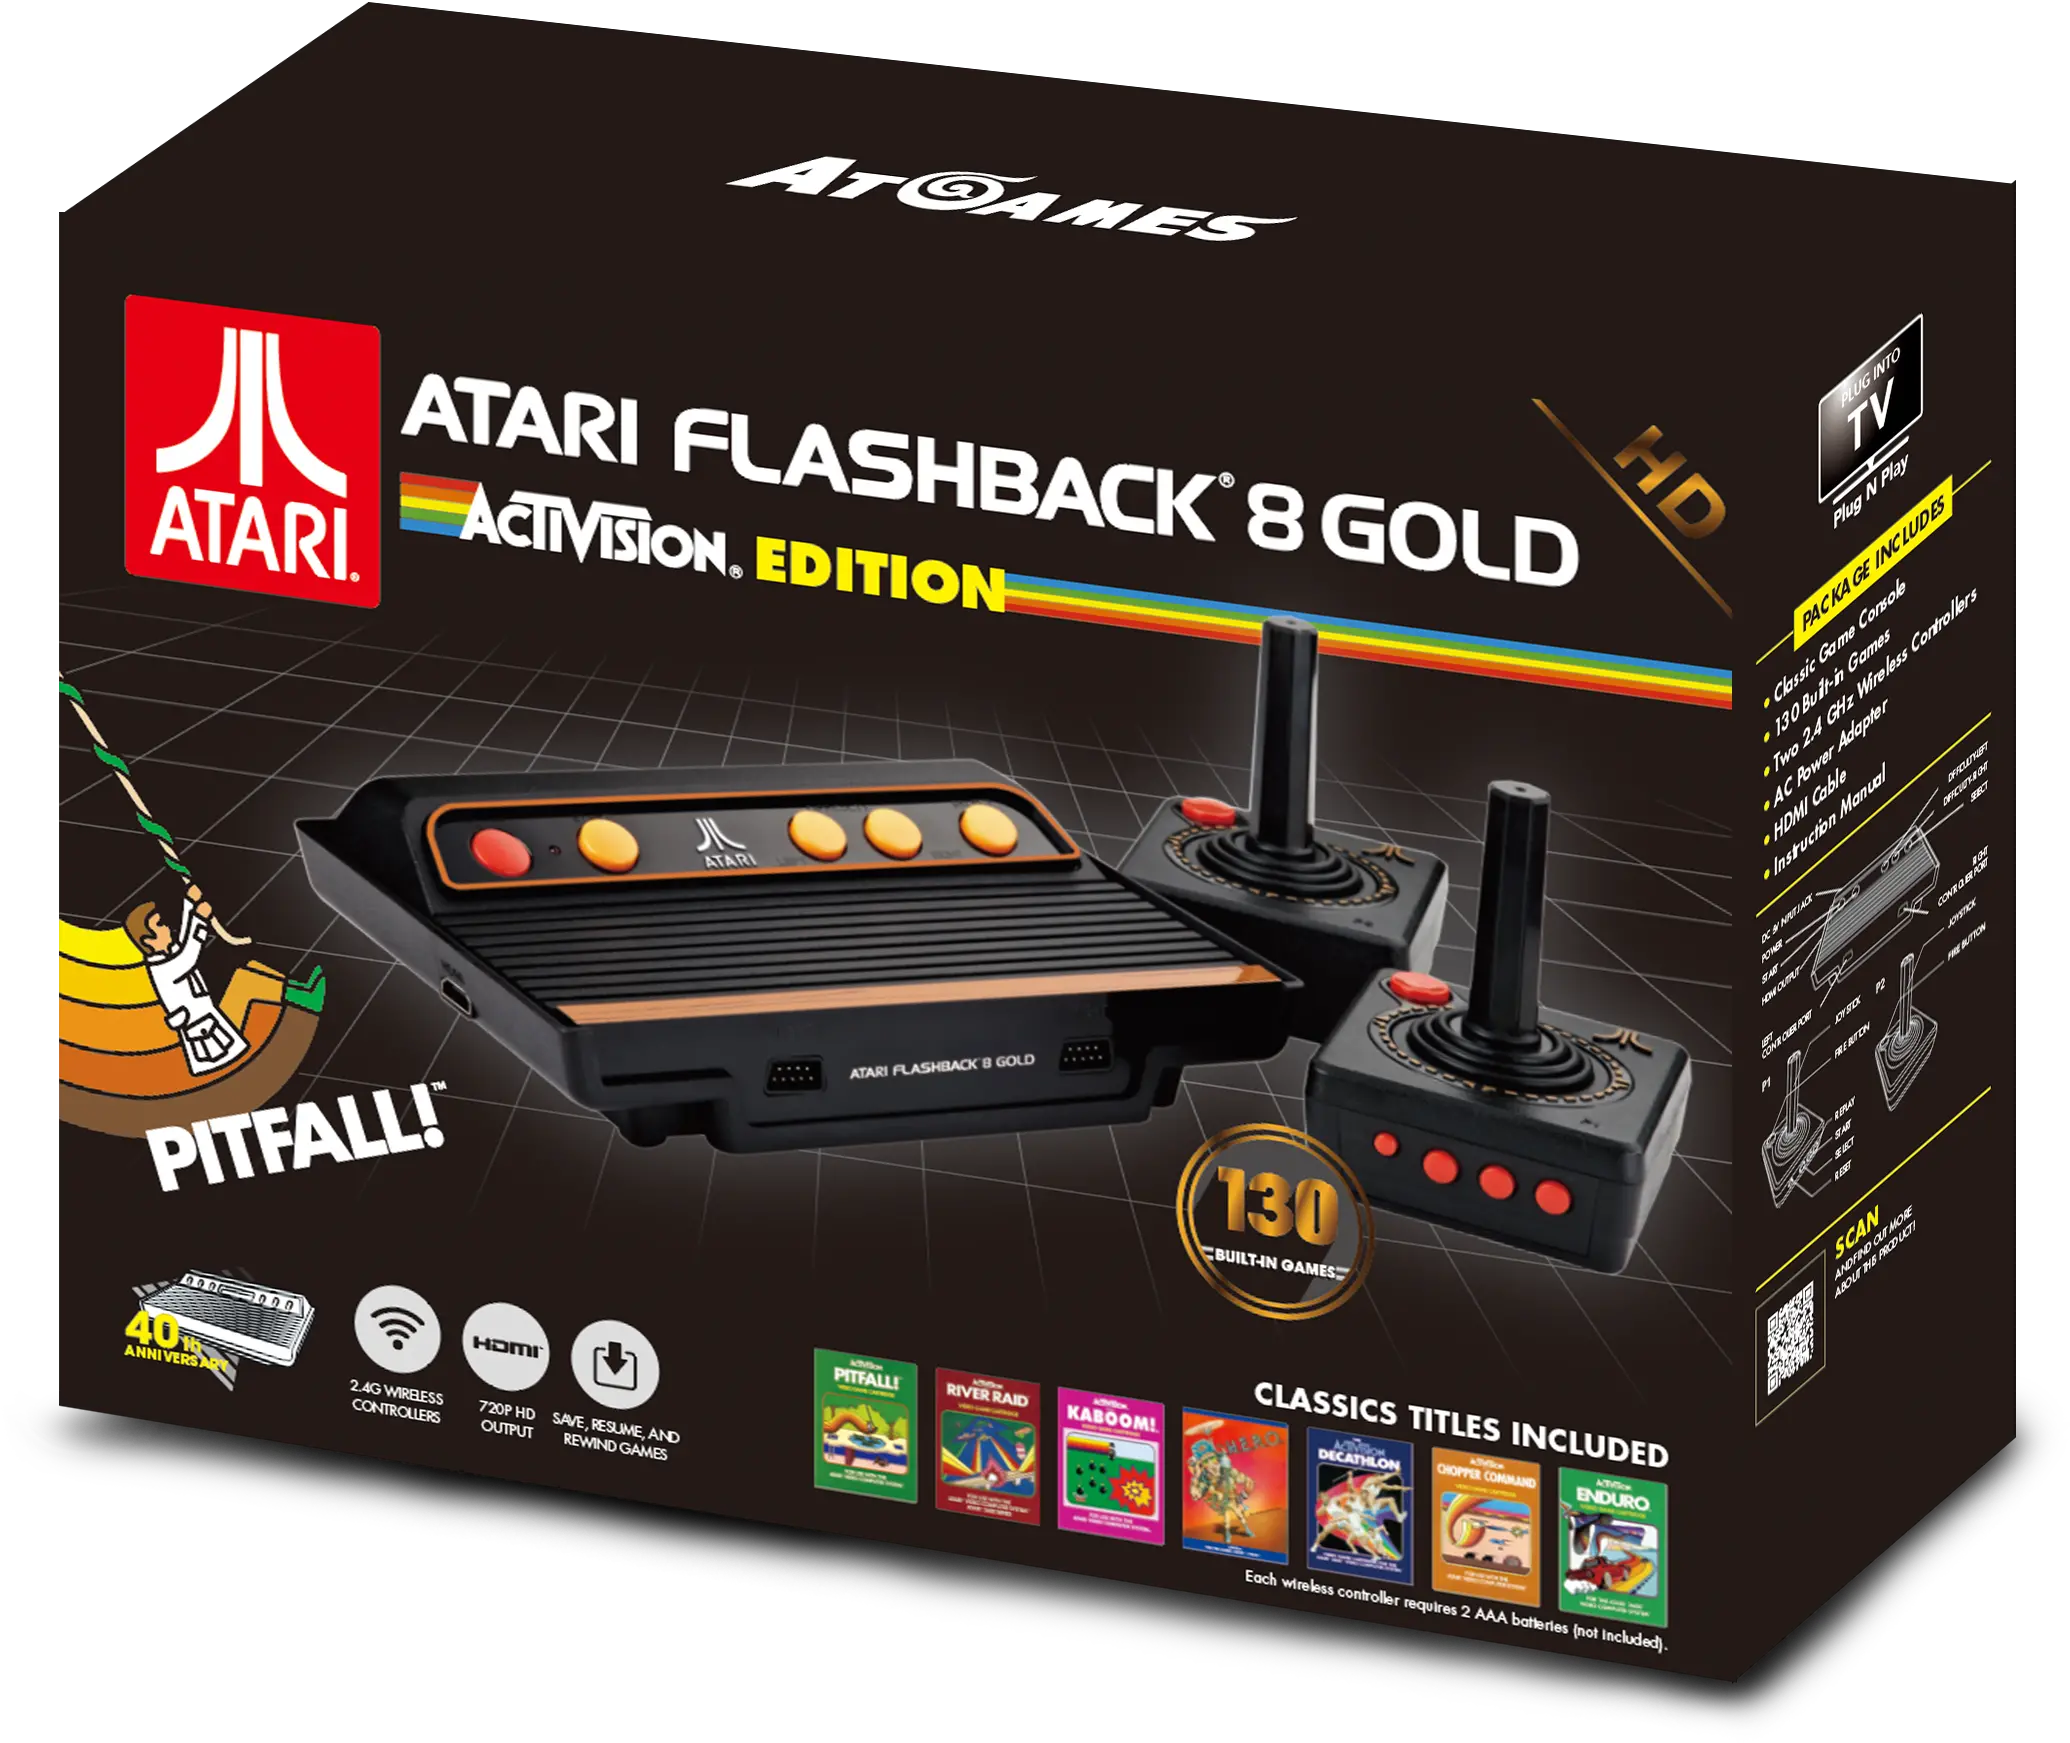 Activision Atari Flashback 8 Gold Activision Edition Png Atari Png